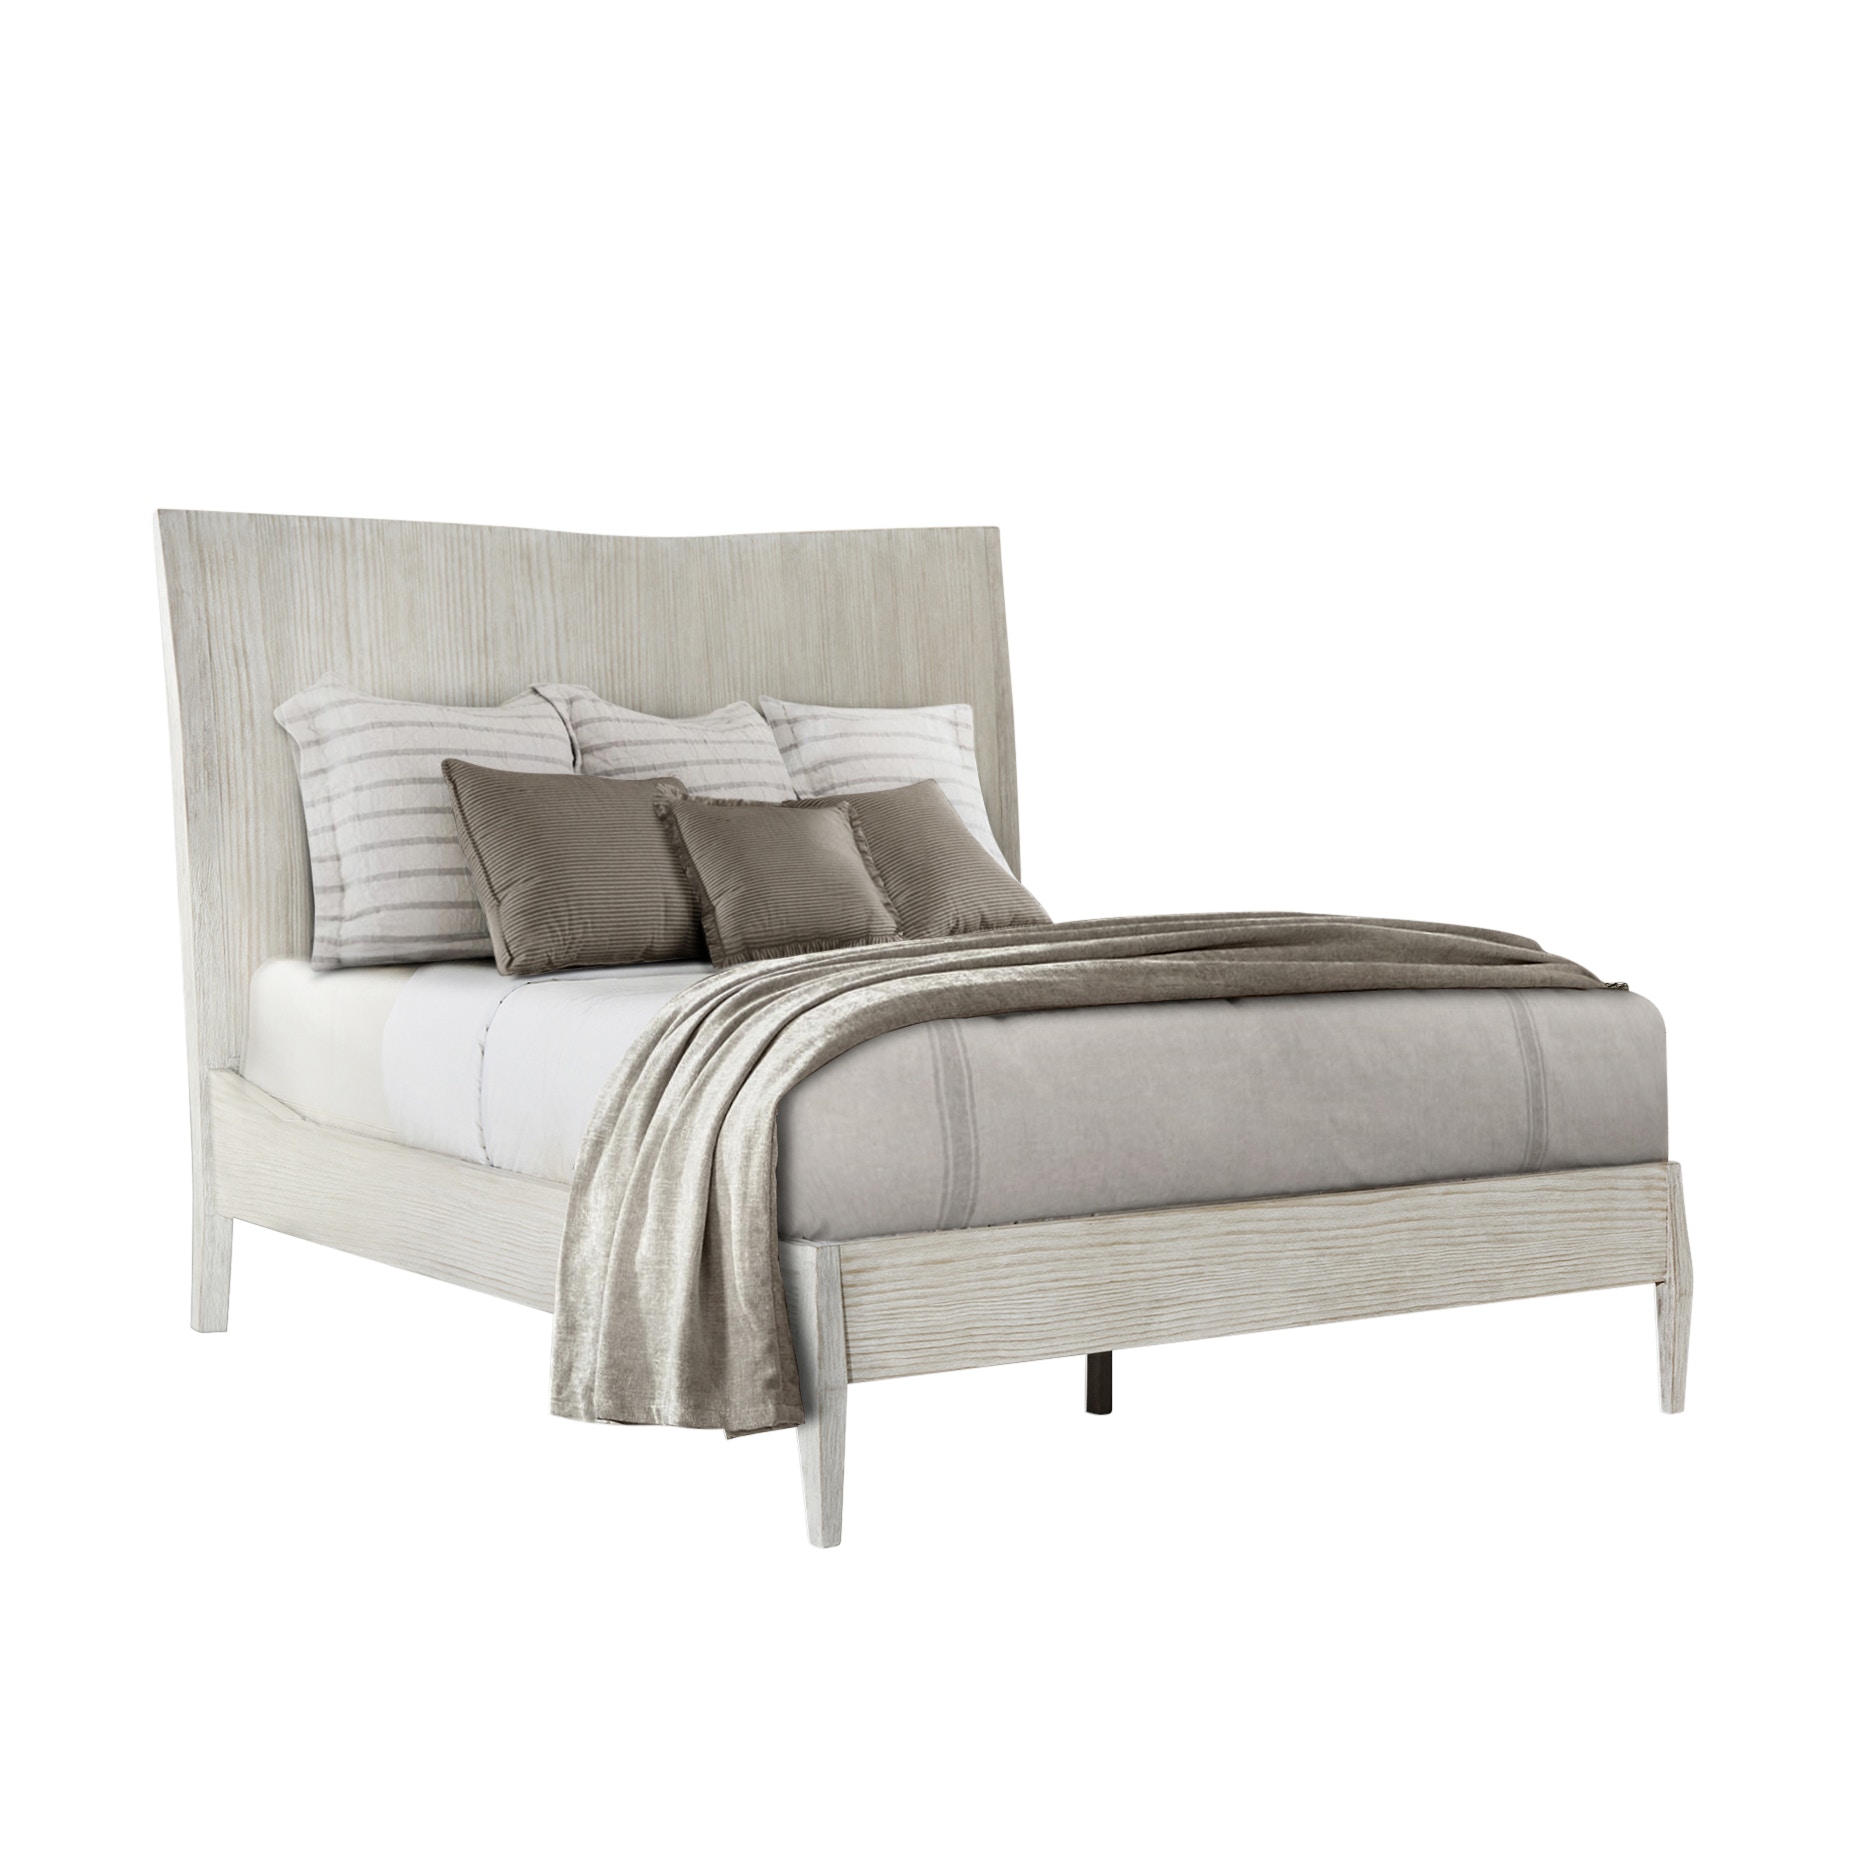 Theodore Alexander Furniture TA82009 Bedroom Breeze Panel US Queen Bed